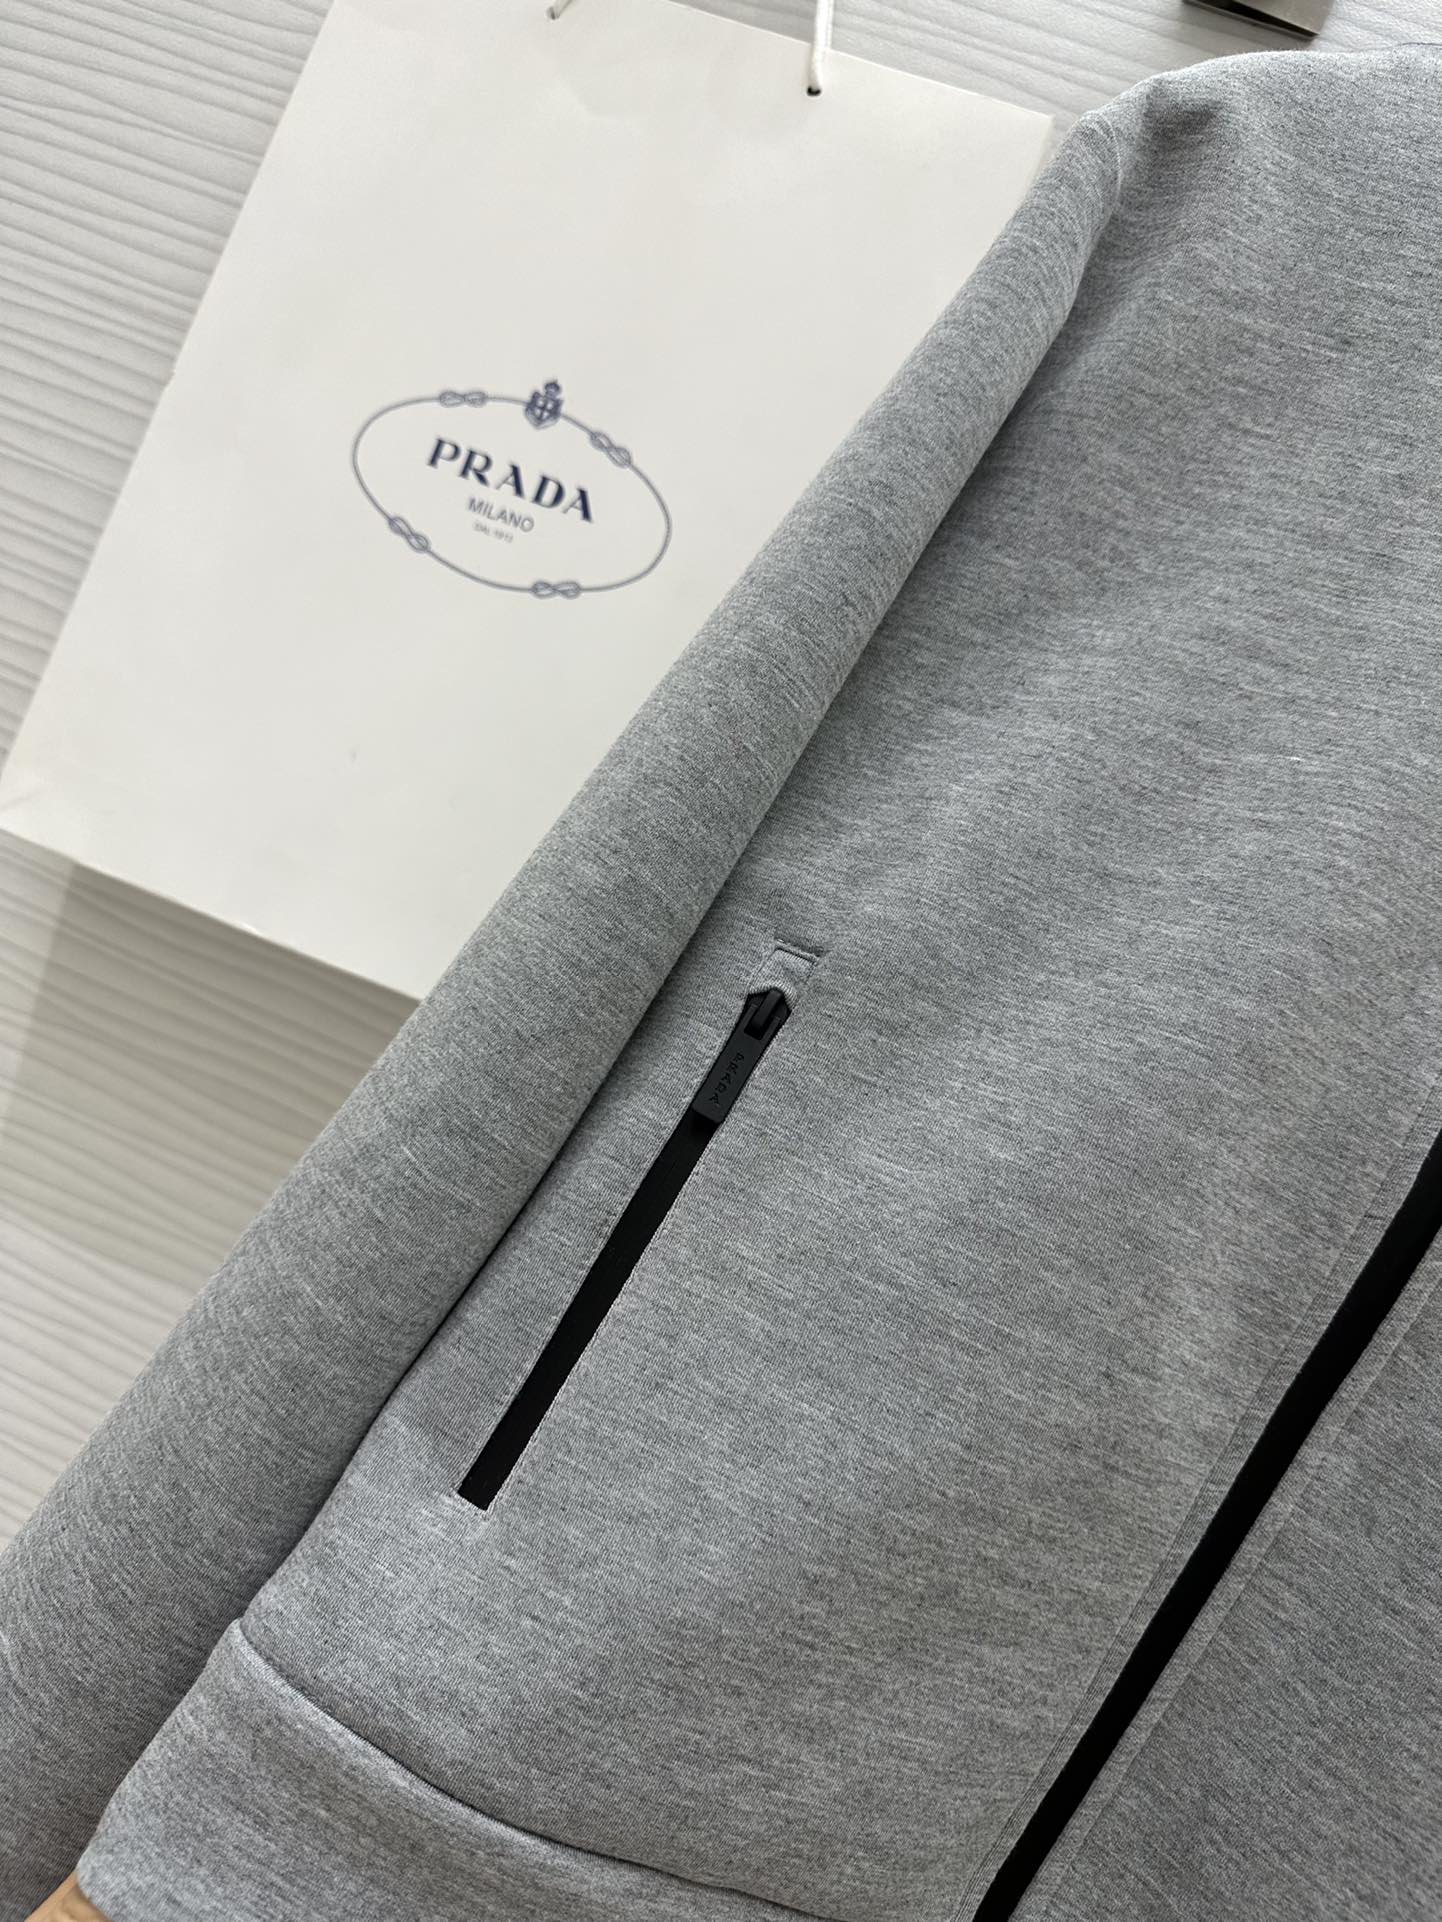 #Pradএ24春夏最新款时髦休闲套装立领夹克外套松紧腰休闲裤logo胶牌装饰很好搭配的灰色系一套上身更